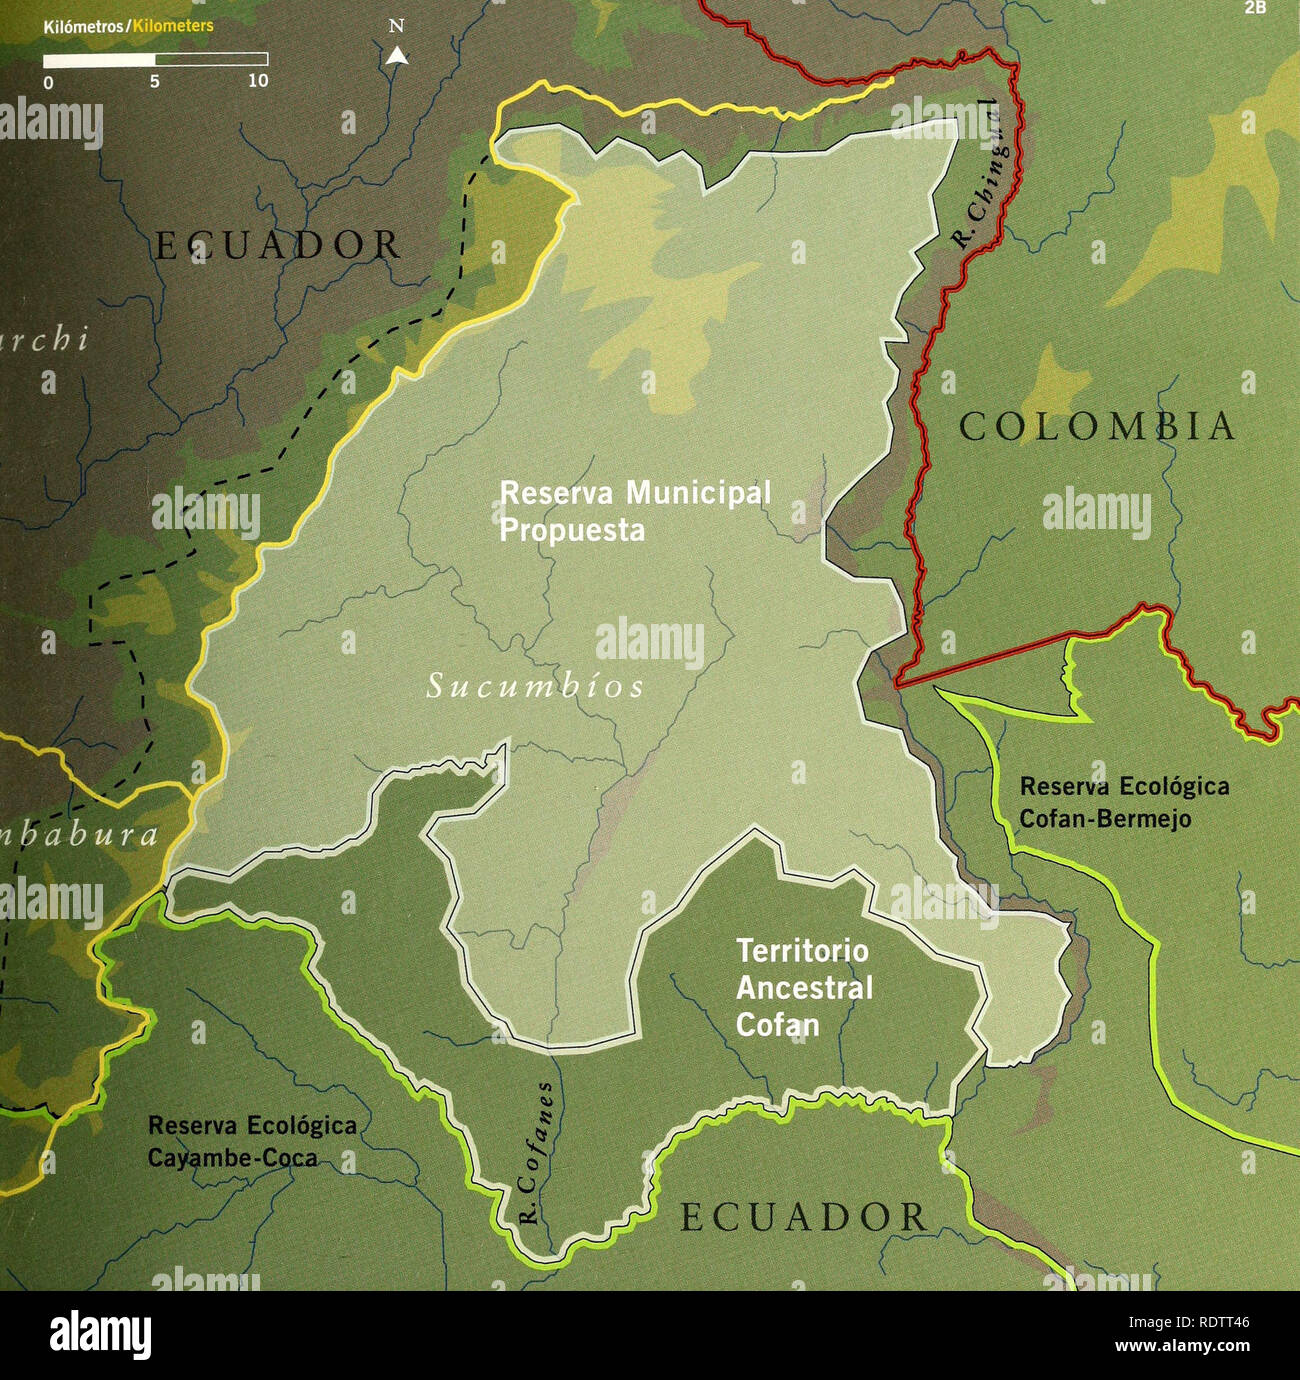 . Ecuador : Cabeceras Cofanes-Chingual. Natural history; Biodiversity; Wildlife conservation. Kilómetros/Kilometers N A 10 f h C U A l) O R COLOMBIA. FiG. 2B Concebimos un paisaje de conservación con dos áreas contiguas protegidas: una reserva municipal y un territorio indígena ancestral. Con la Reserva Ecológica Cayambe-Coca y la Reserva Ecológica Cofan-Bermejo, estas dos áreas formarían un corredor de conservación de más de 550.000 hectáreas. Las vertientes adyacentes en las provincias de Carchi e Imbabura (delimitadas con líneas punteadas negras) representan una oportu- nidad única para pr Stock Photo